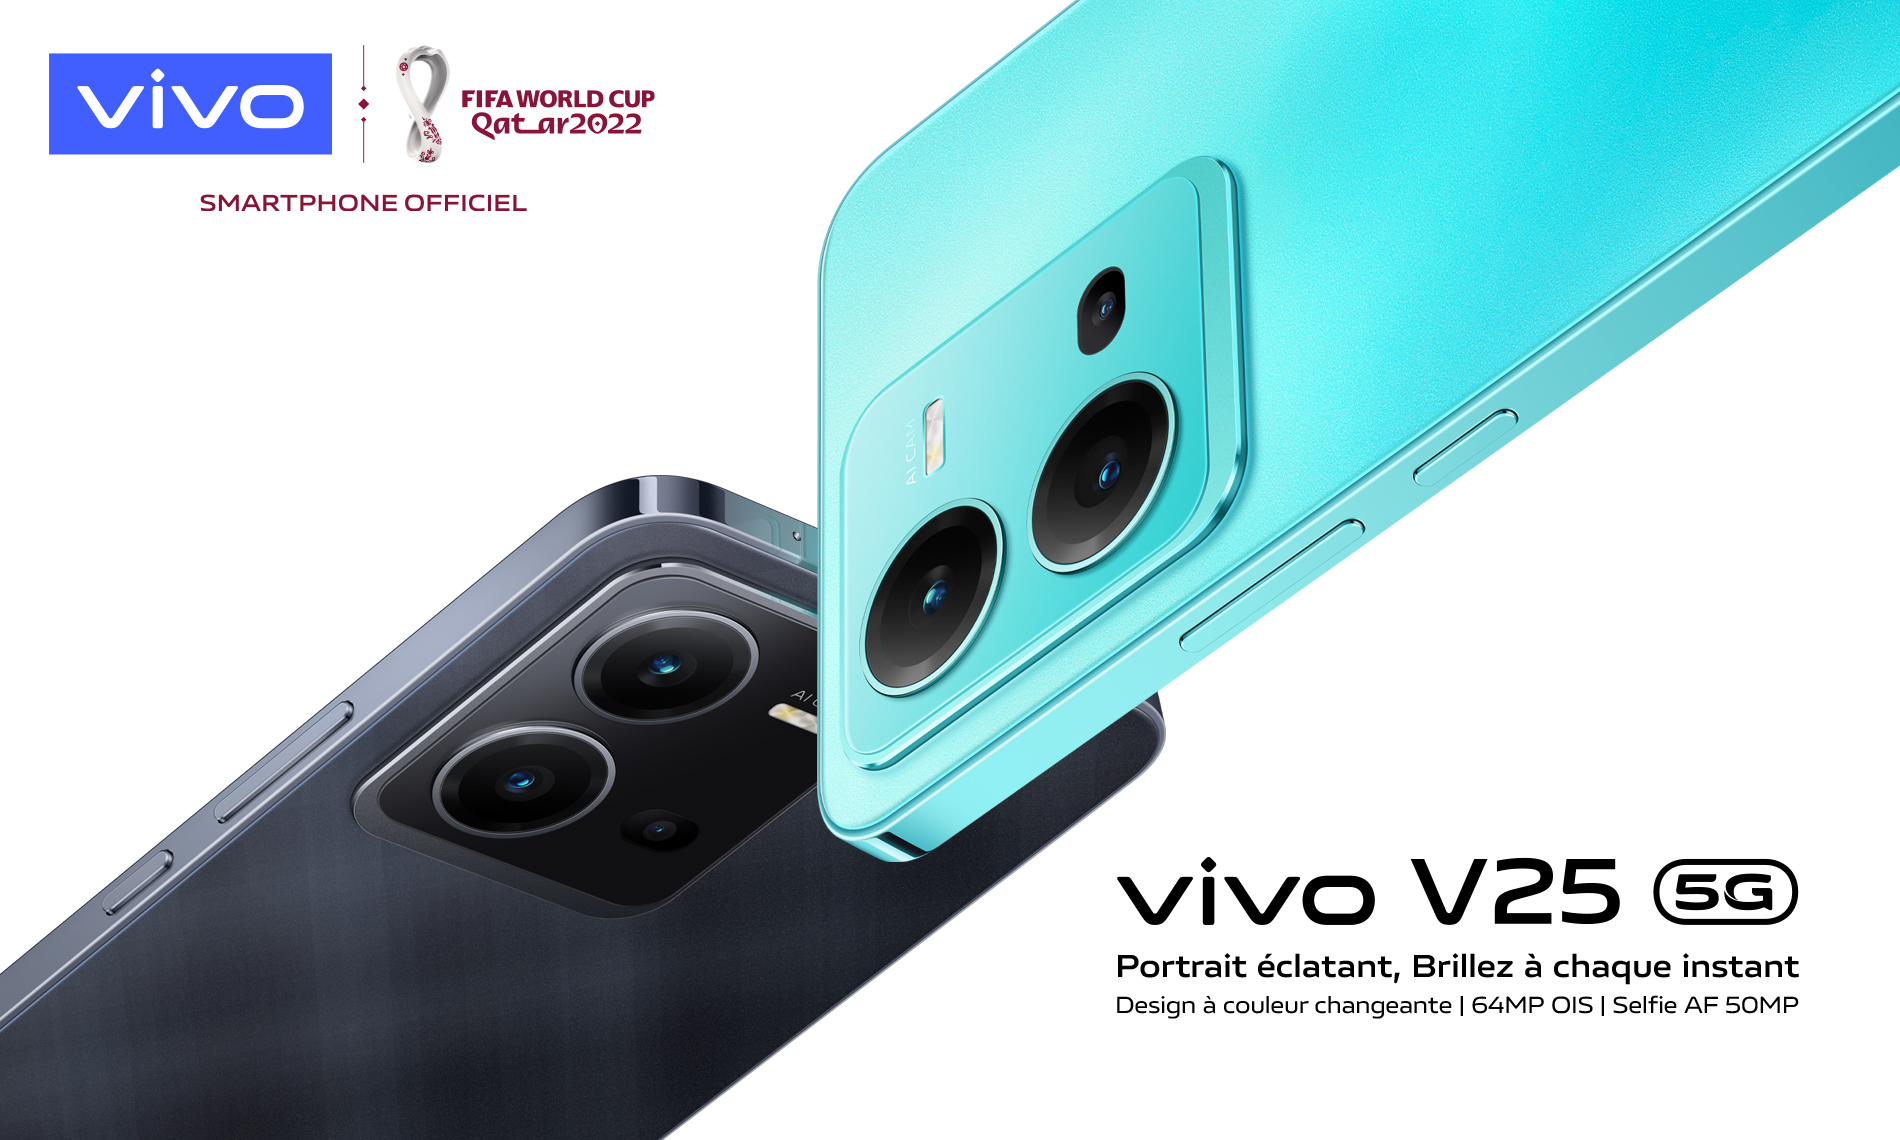 vivo dévoile le nouveau V25 5G très performant, aux couleurs changeantes, doté de fonctions photographiques avancées, destinées à l'expression créative